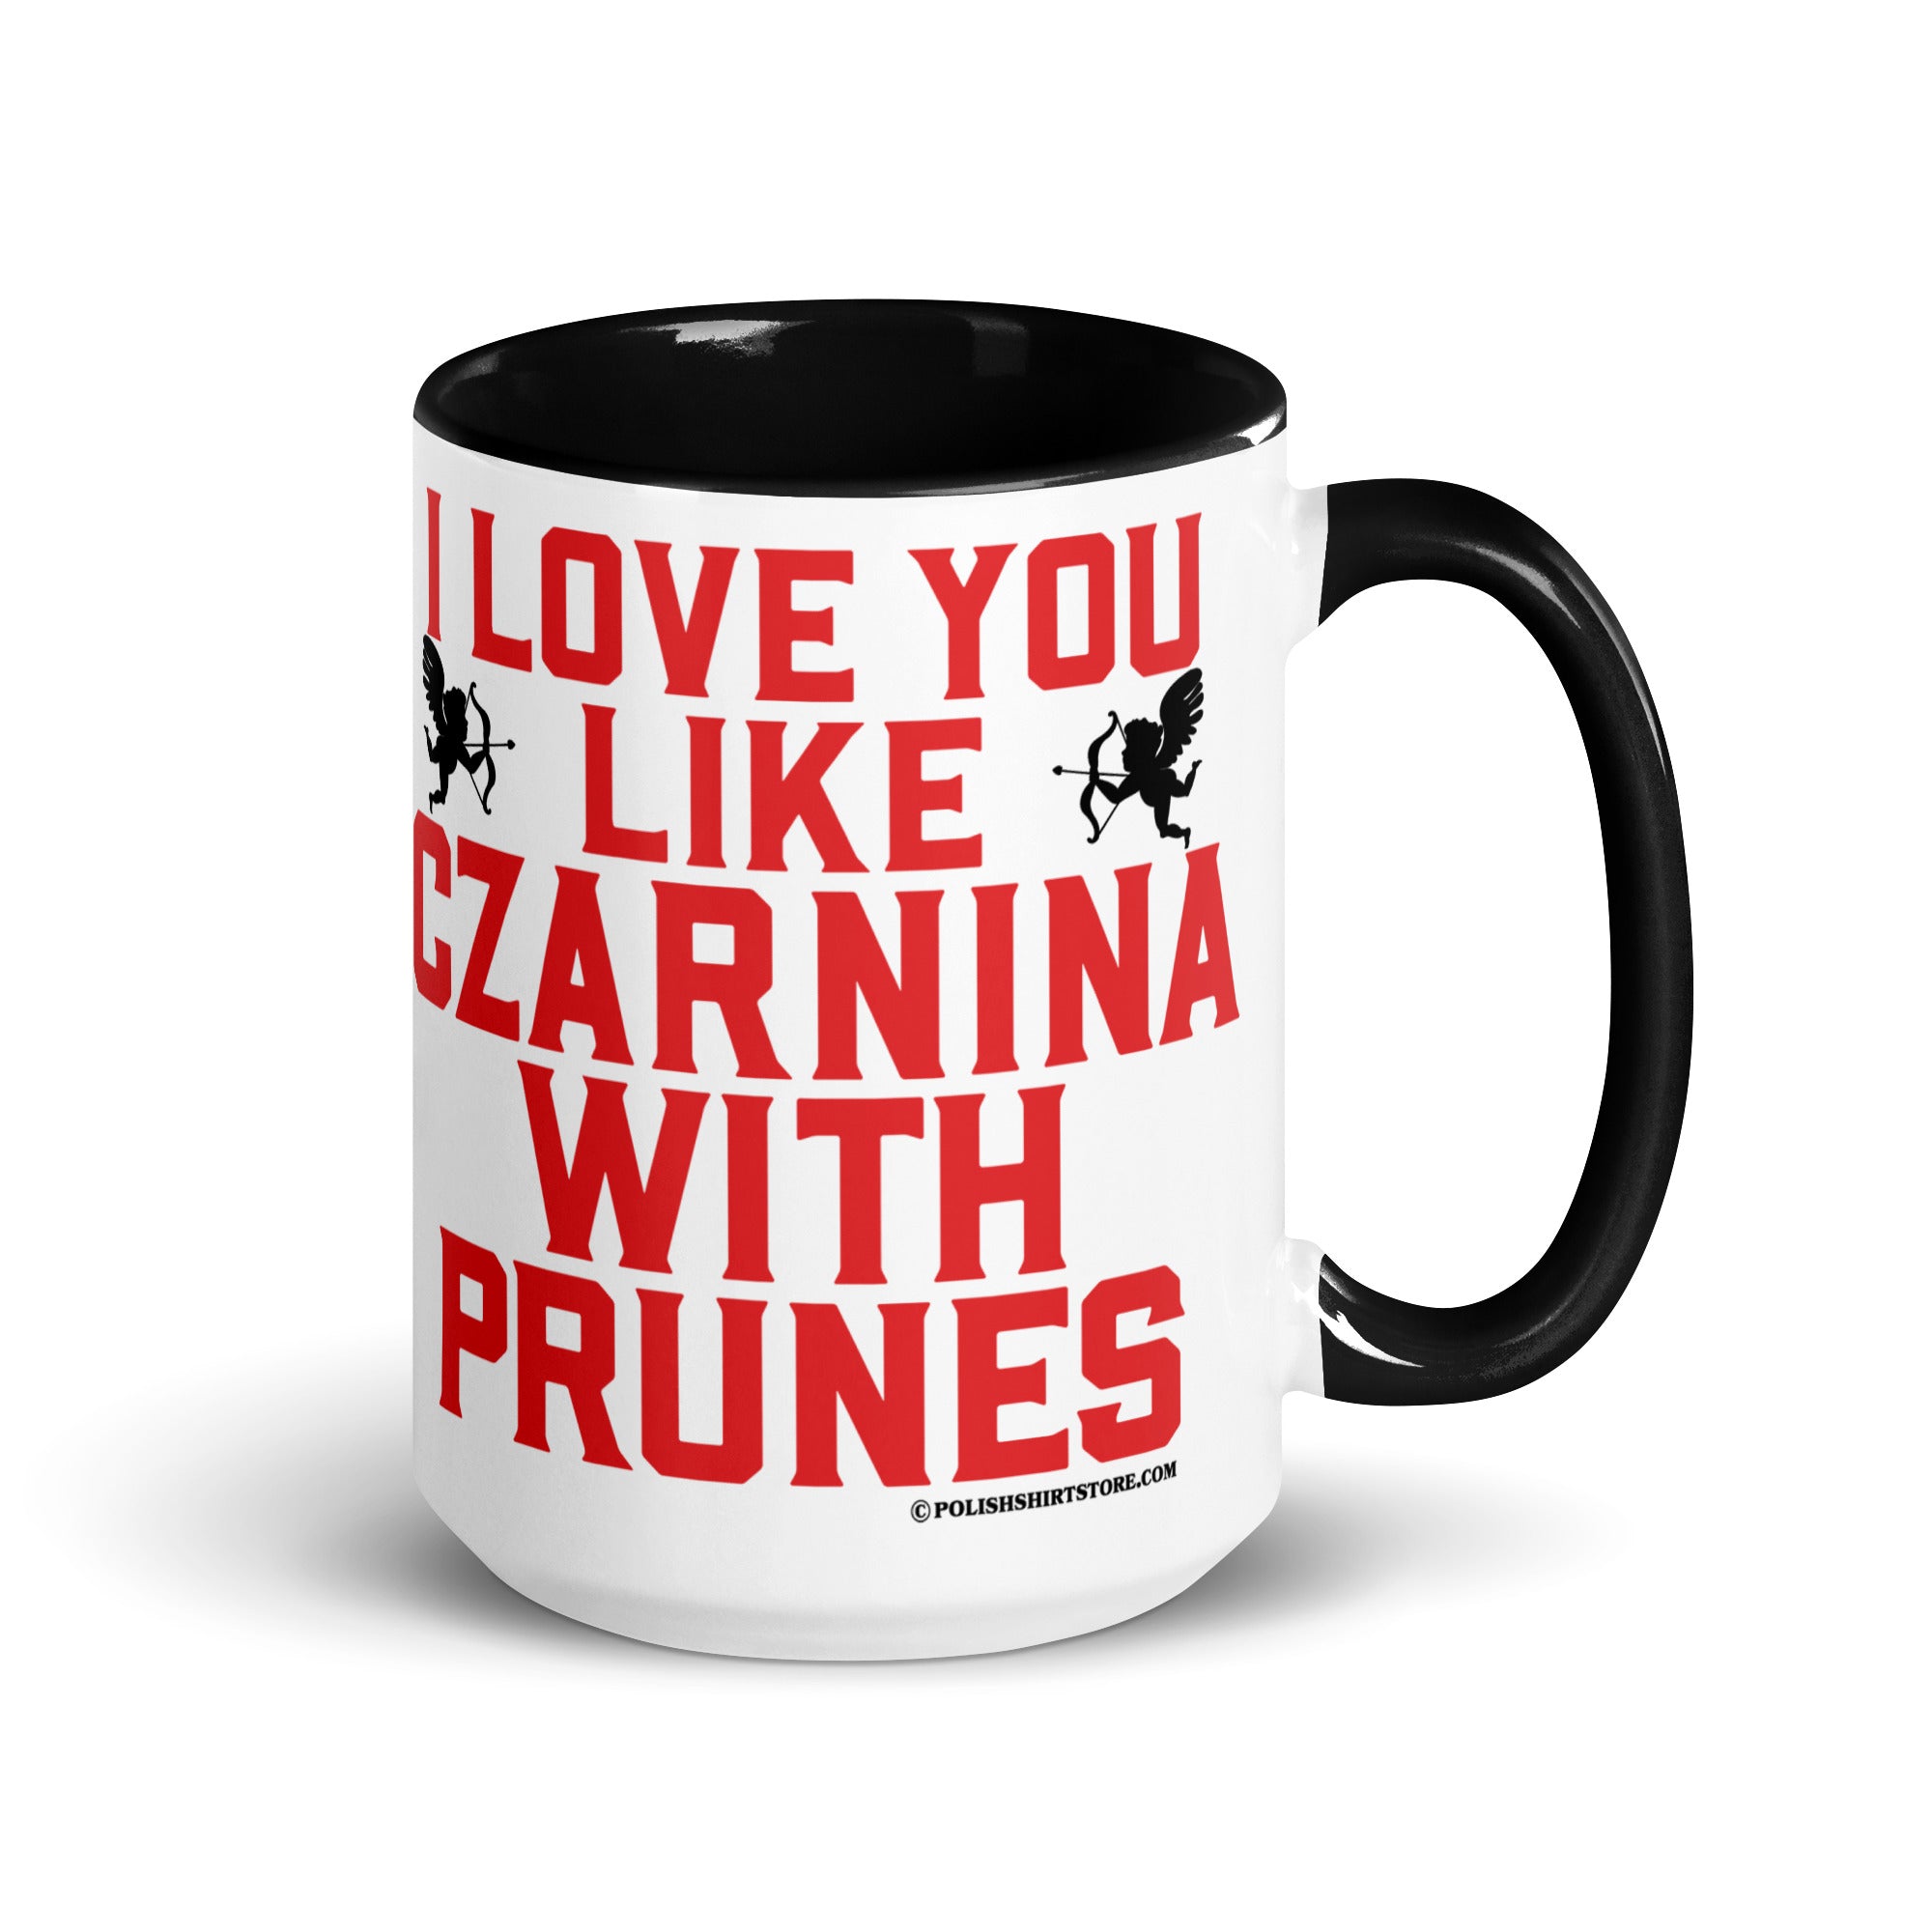 I Love You Like Czarnina With Prunes Coffee Mug with Color Inside  Polish Shirt Store Black 15 oz 